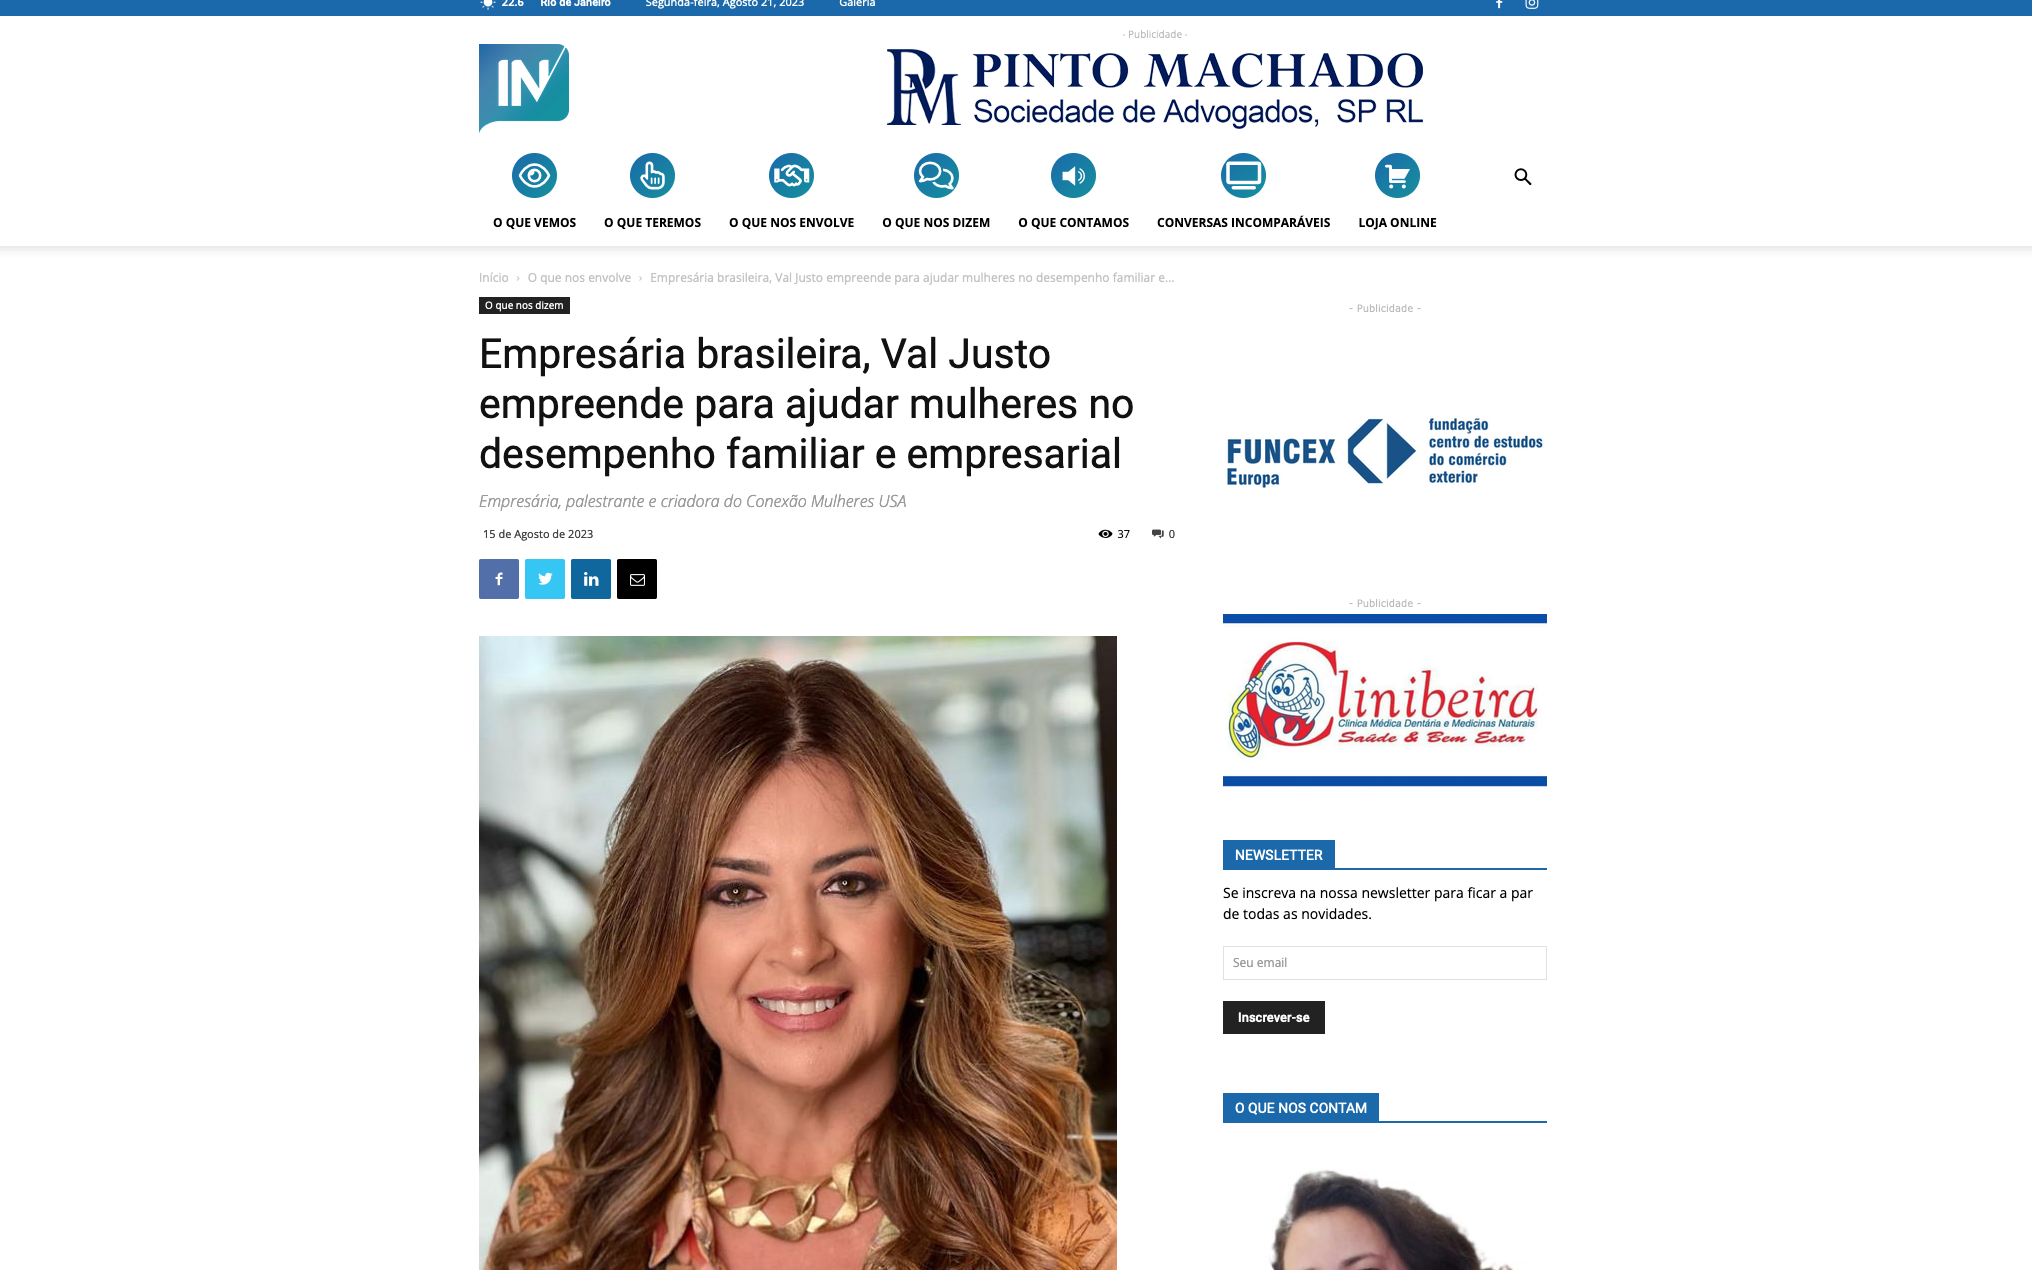 No momento você está vendo Empresária brasileira, Val Justo empreende para ajudar mulheres no desempenho familiar e empresarial